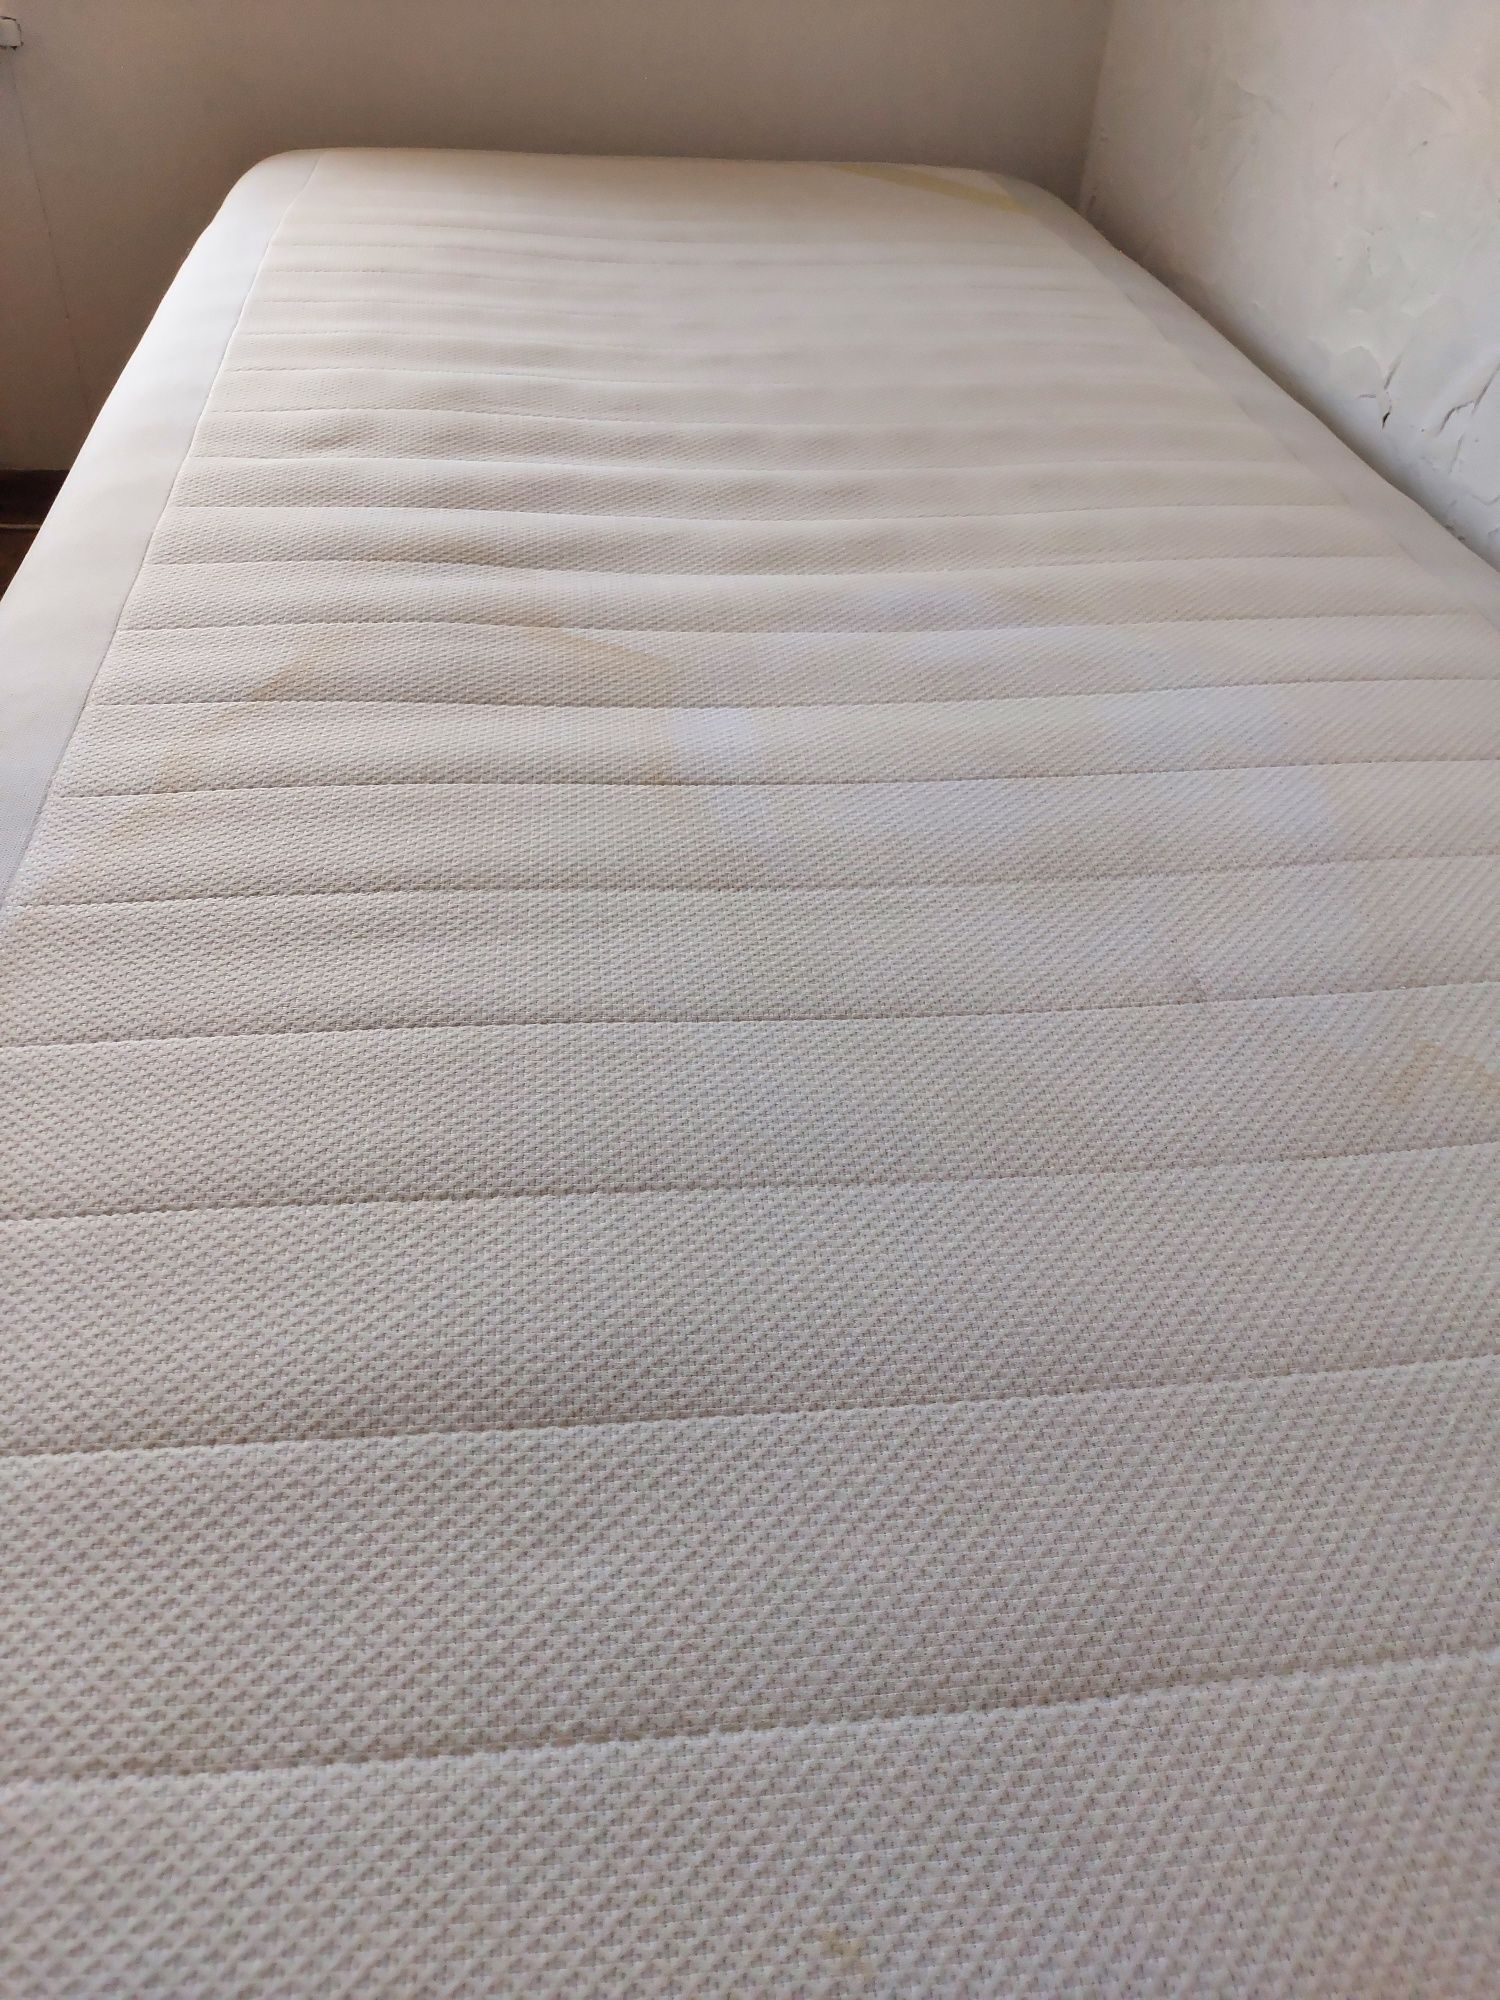 OKAZJA! Bardzo wygodne łóżko drewniany stelaż materac przykręcane nogi